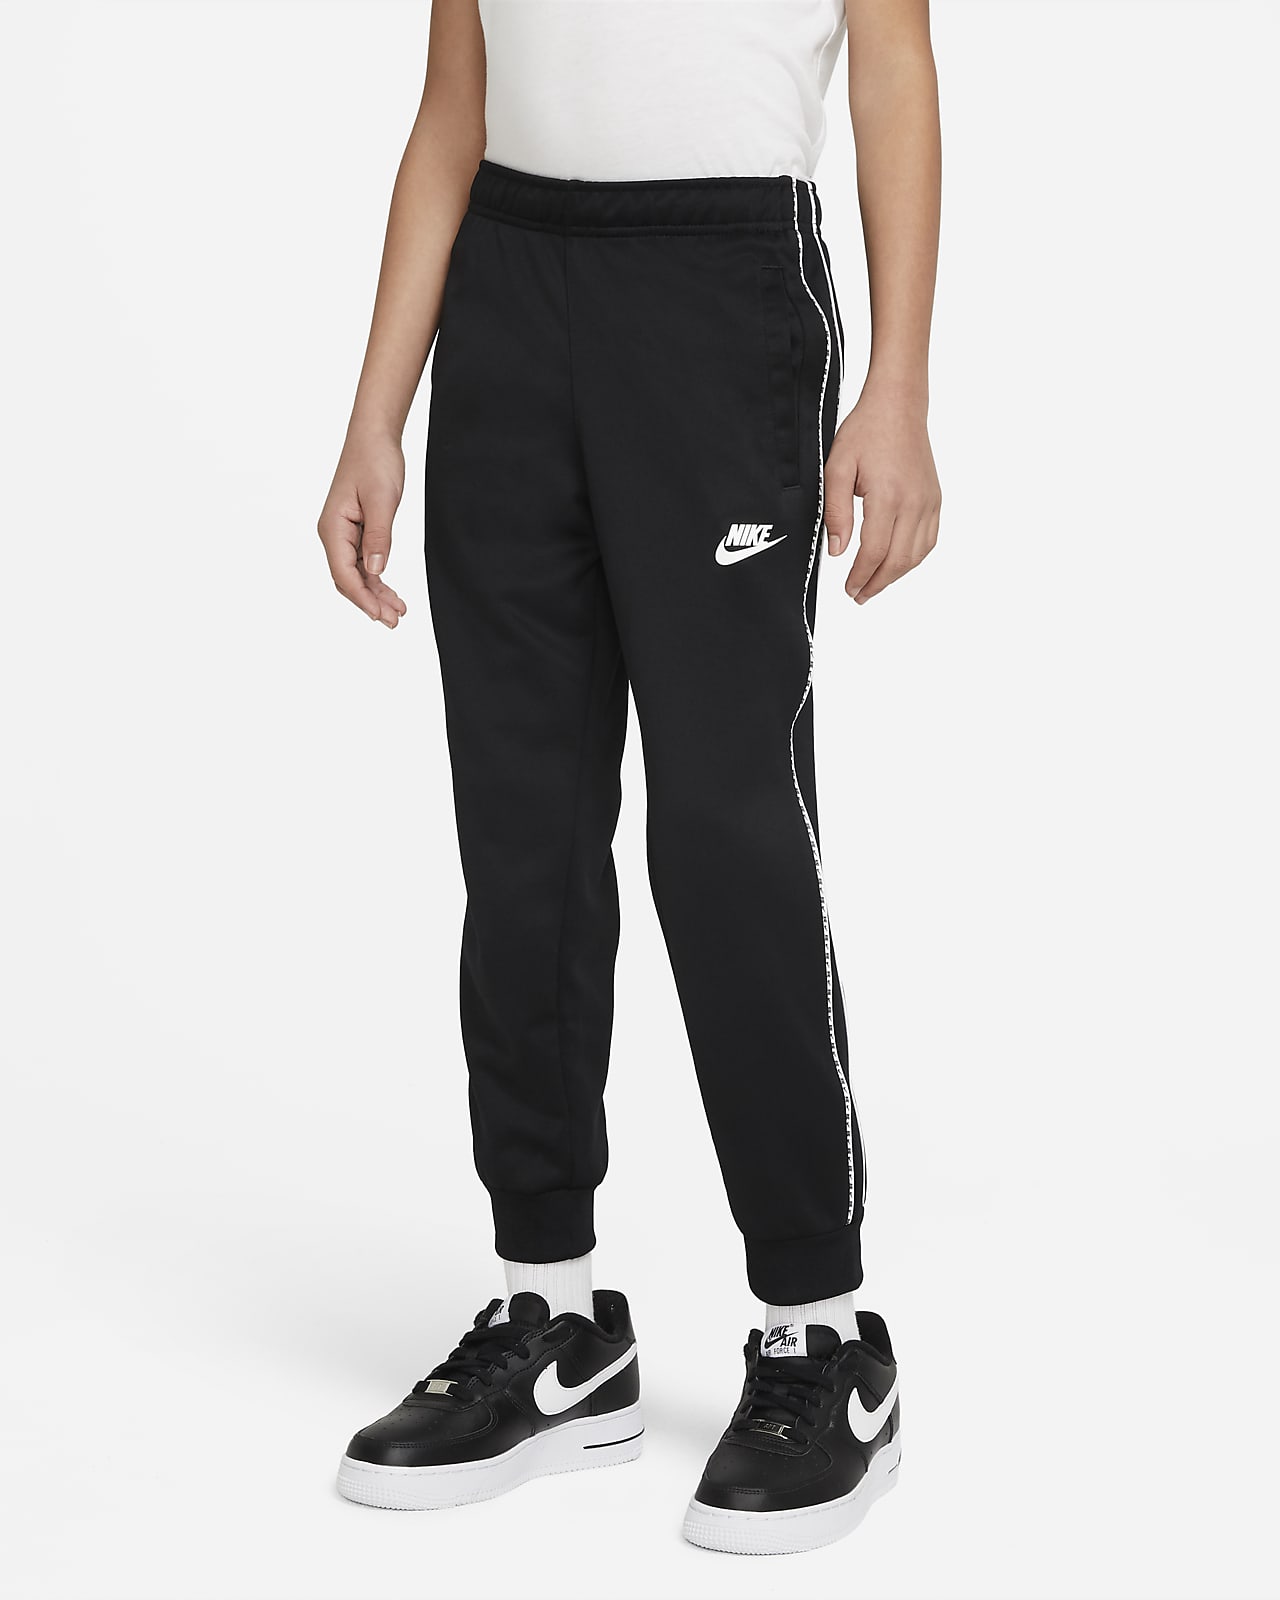 Nike Sportswear Older Kids' (Boys') Joggers